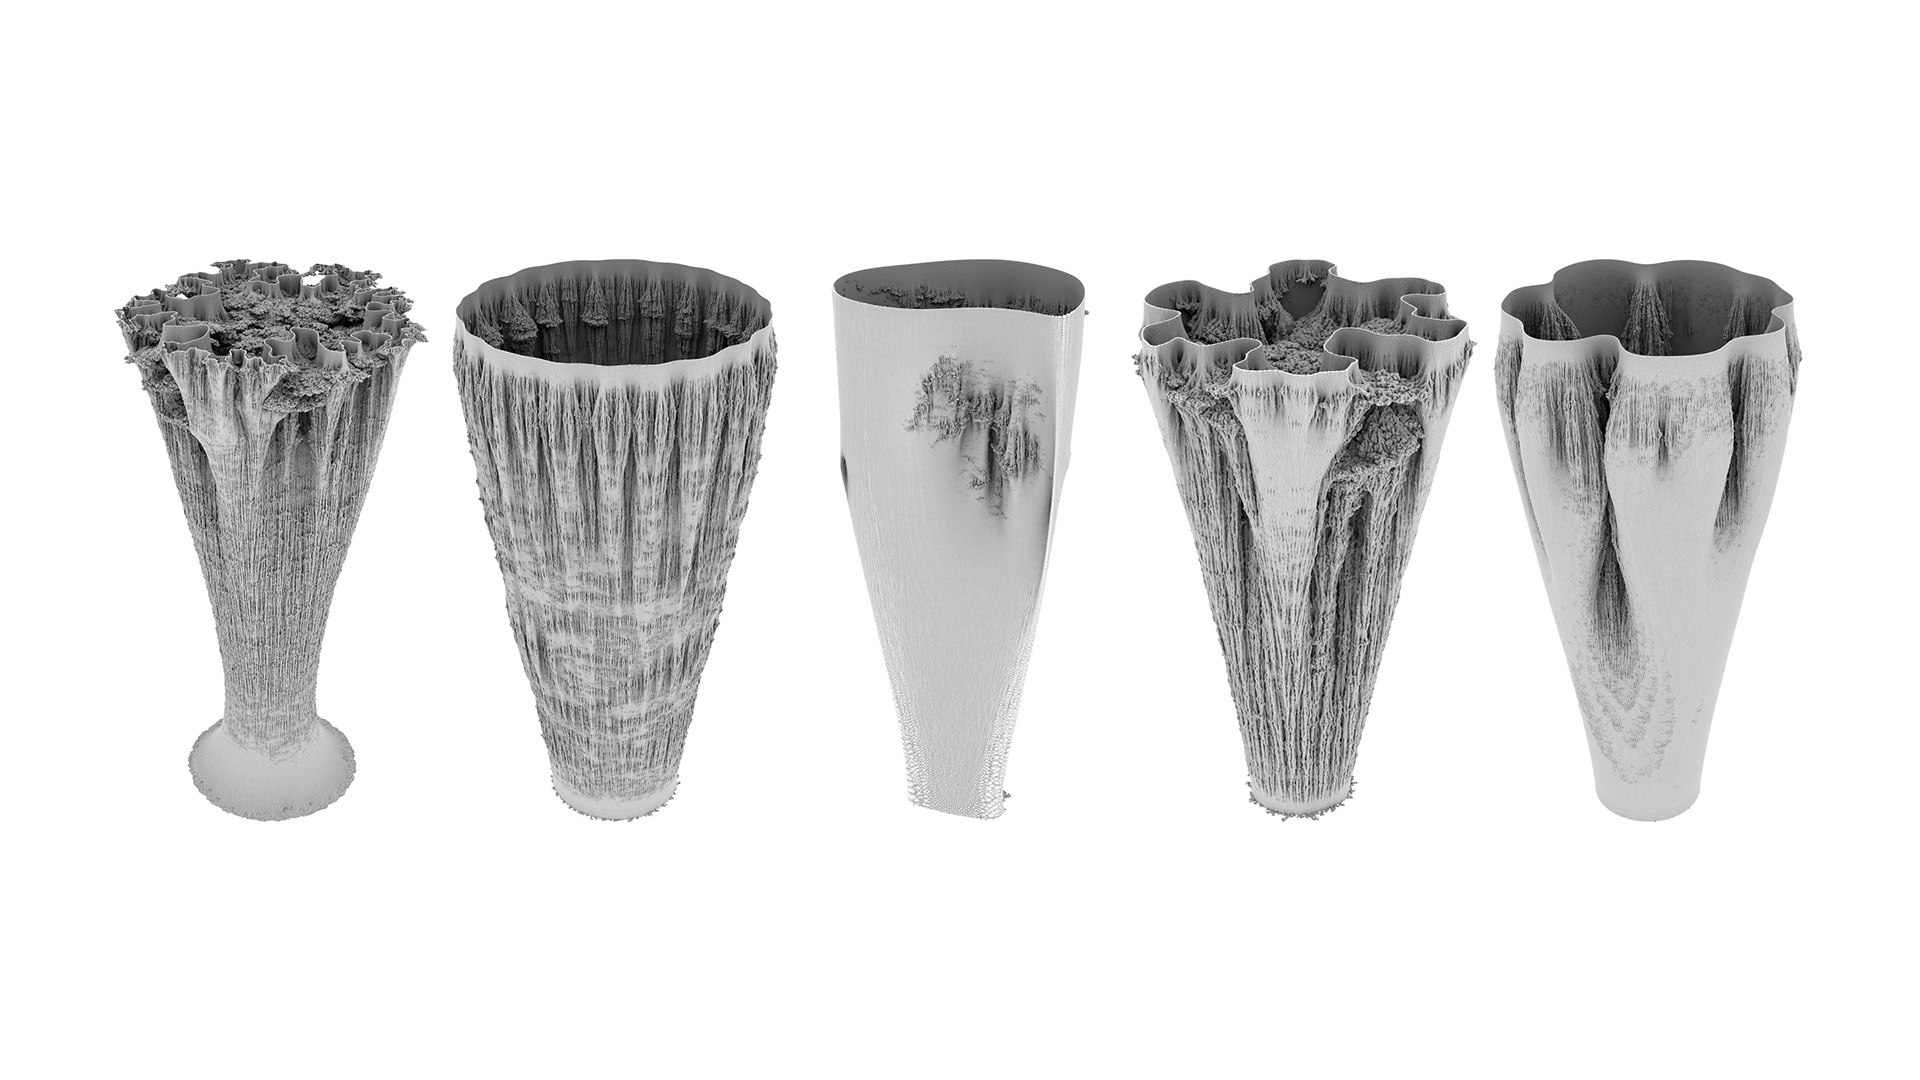 Vase Forms, 2019